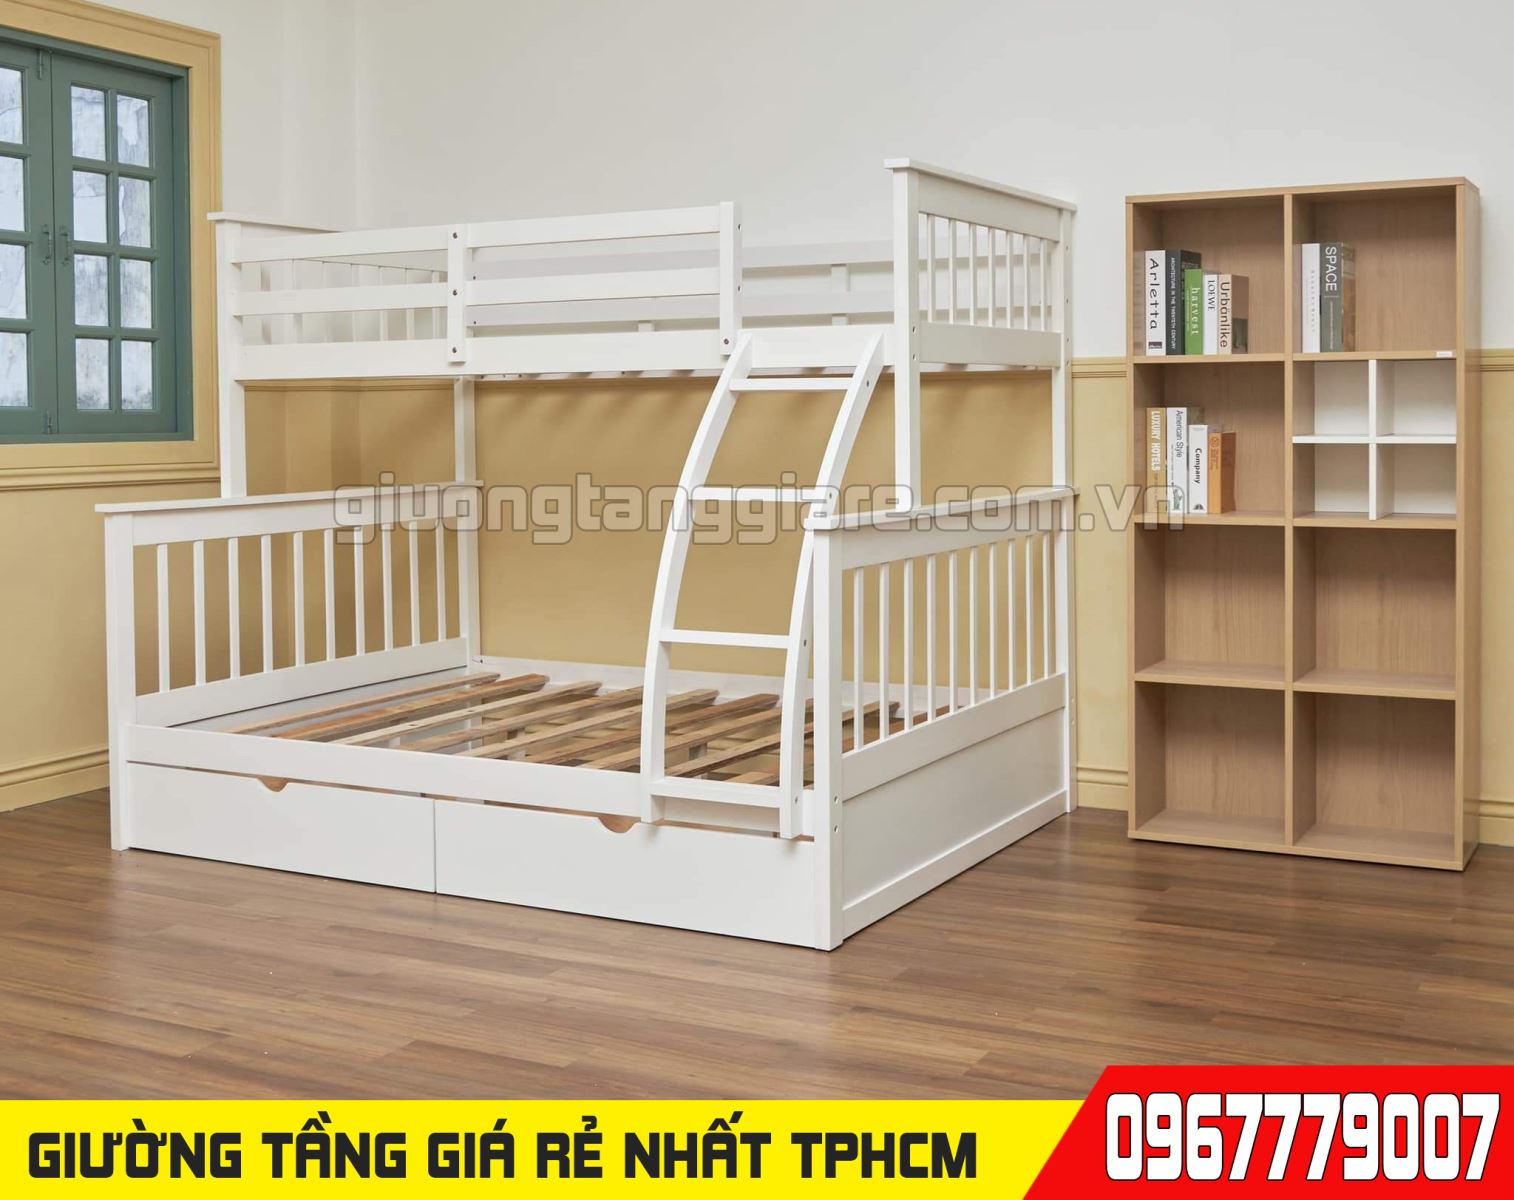 CH bán giường tầng trẻ em giá rẻ uy tín nhất Quận Gò Vấp TPHCM 30